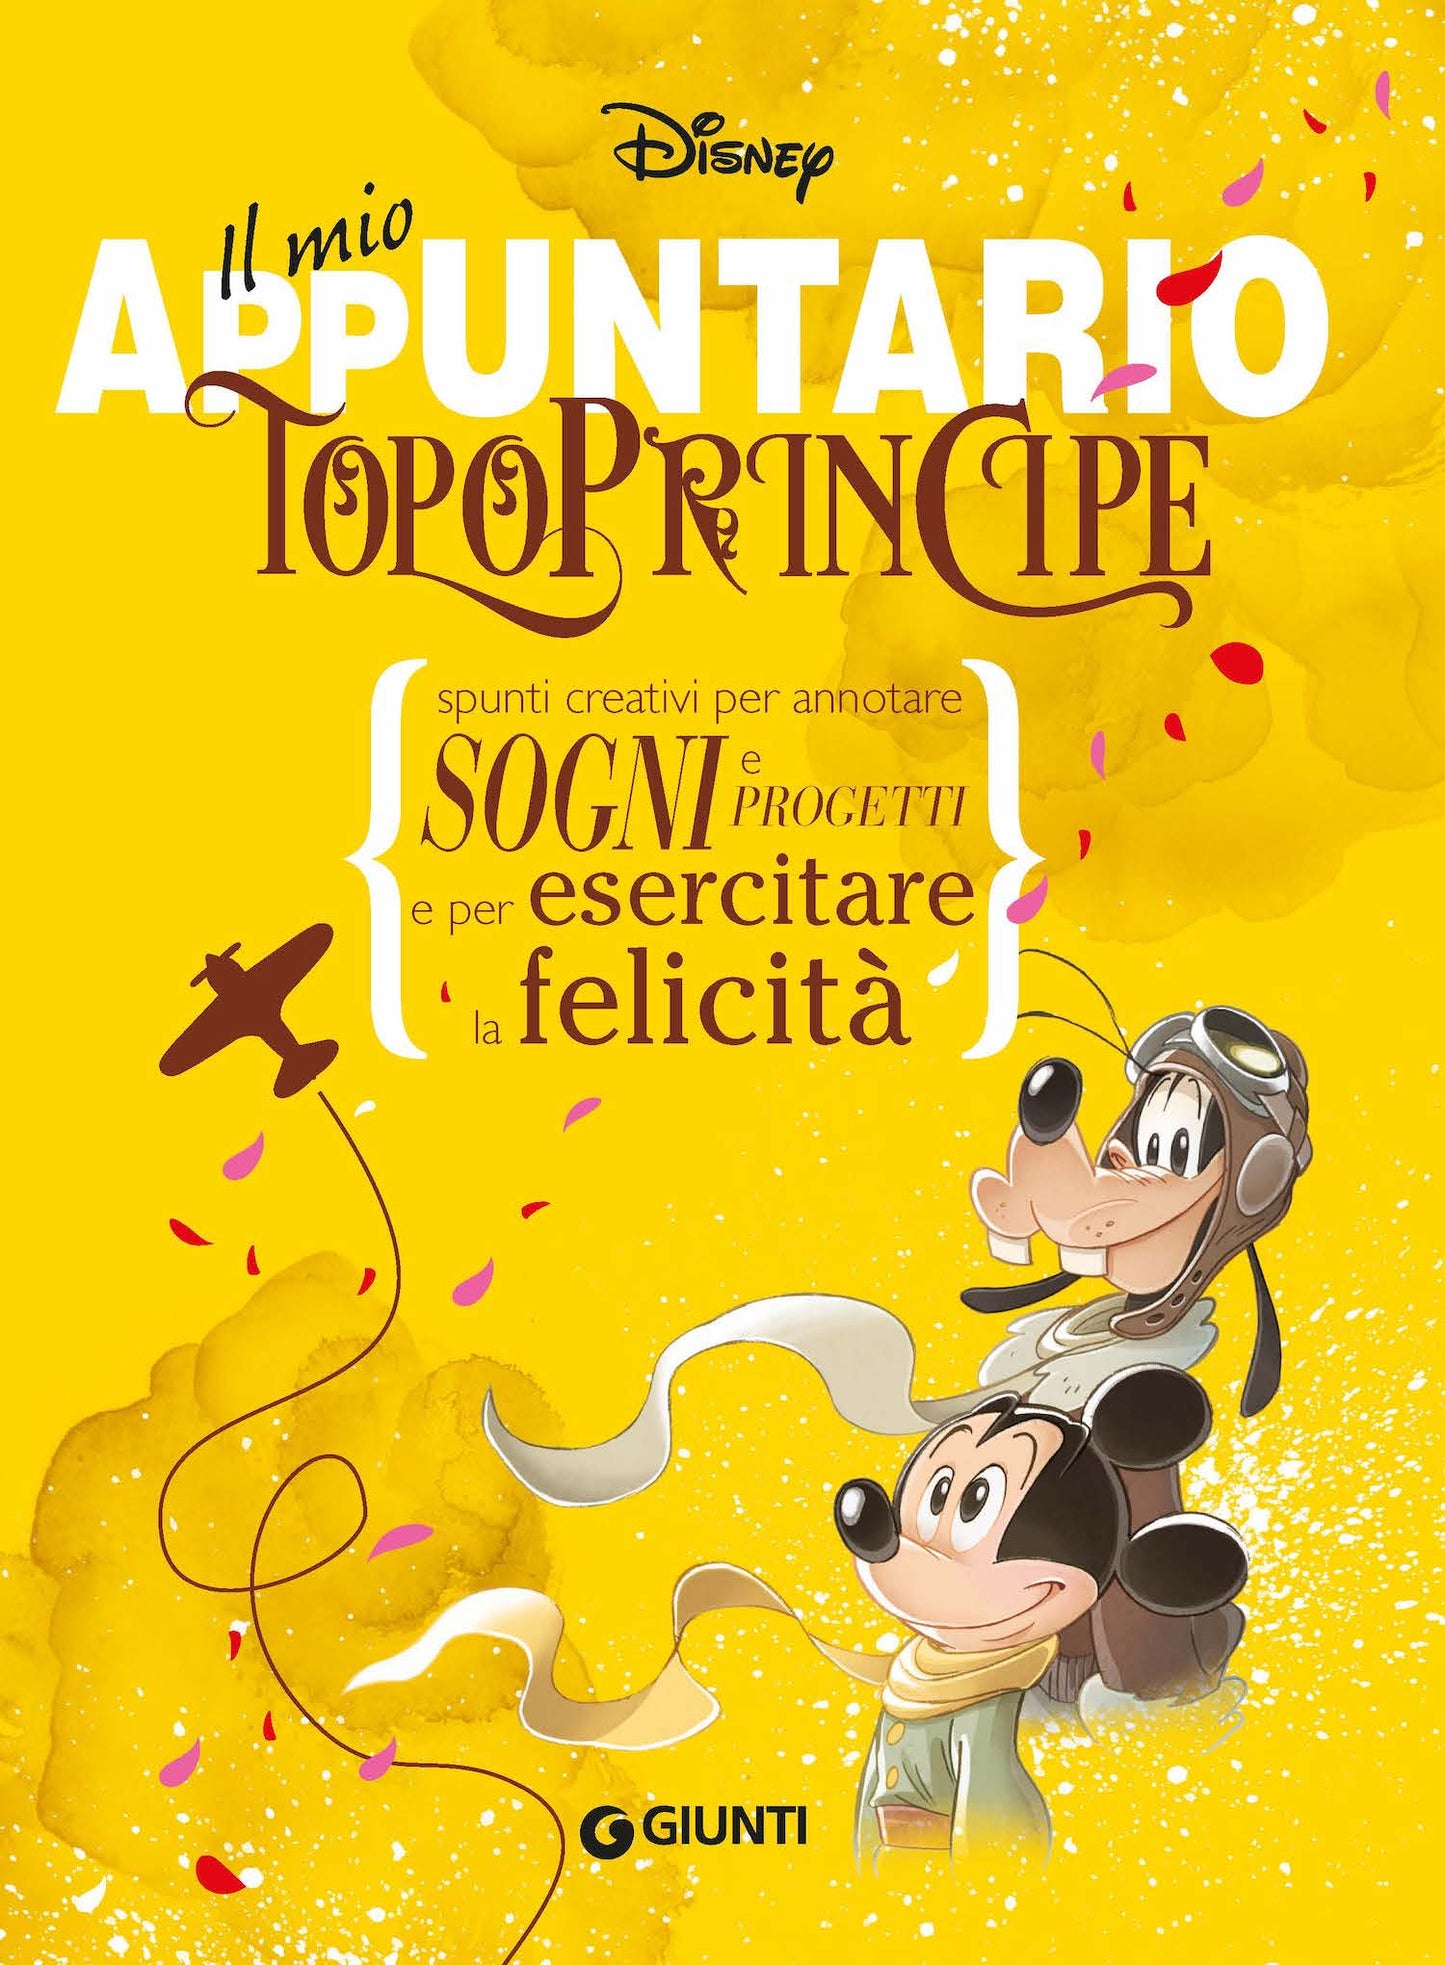 TopoPrincipe - Il mio appuntario::Spunti creativi per appuntare sogni e progetti e per esercitare la felicità